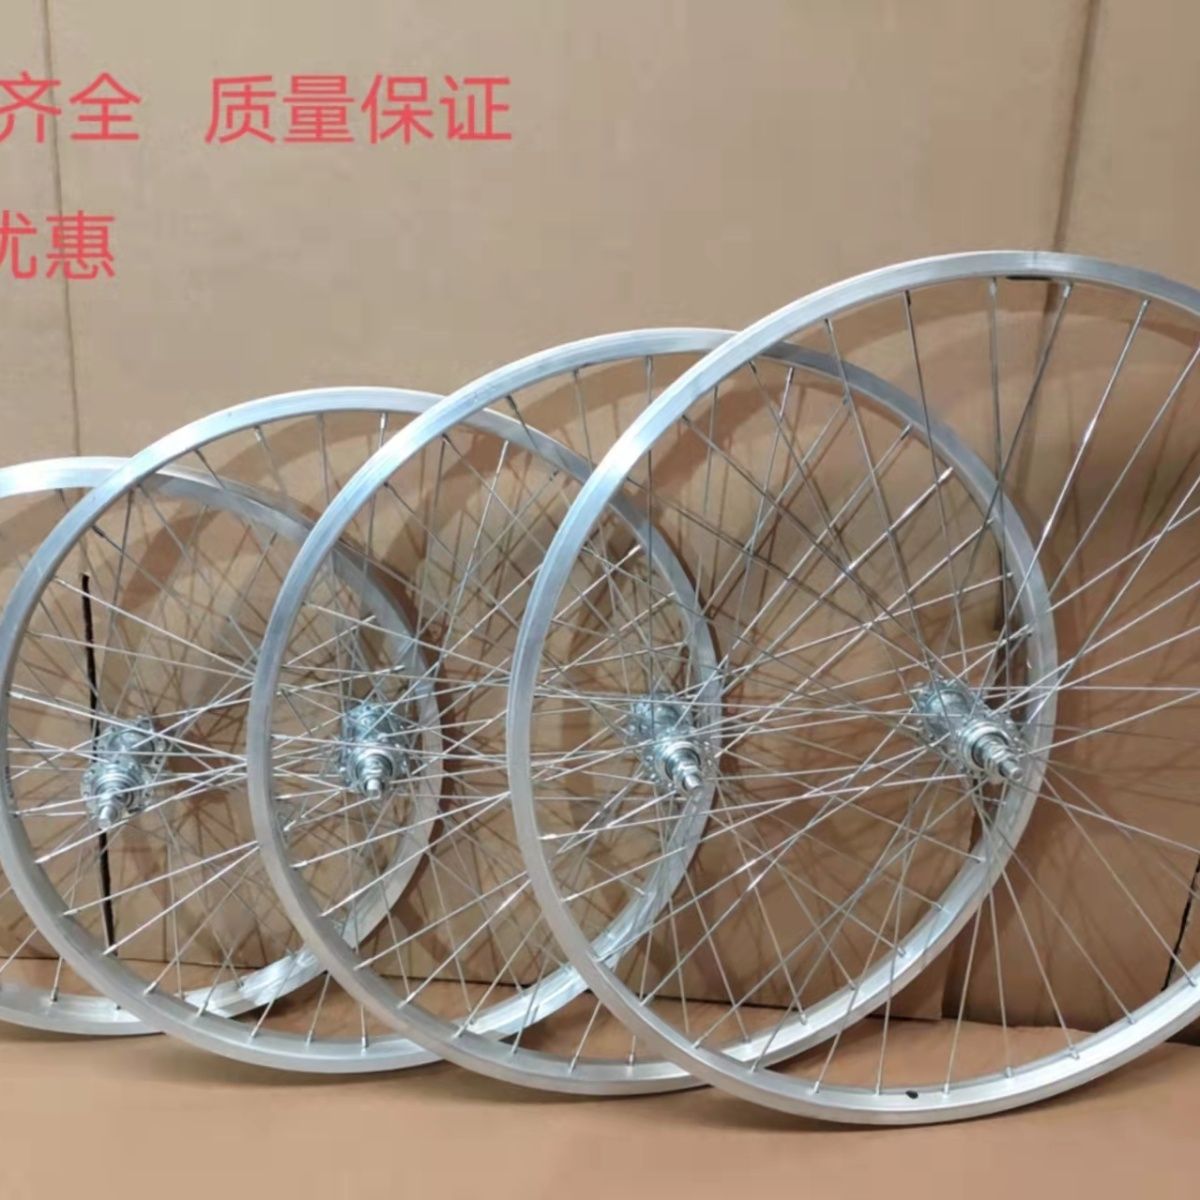 20寸22|24寸26寸普通轻便自行车轮组前后轮铝合金轮圈自行车钢圈